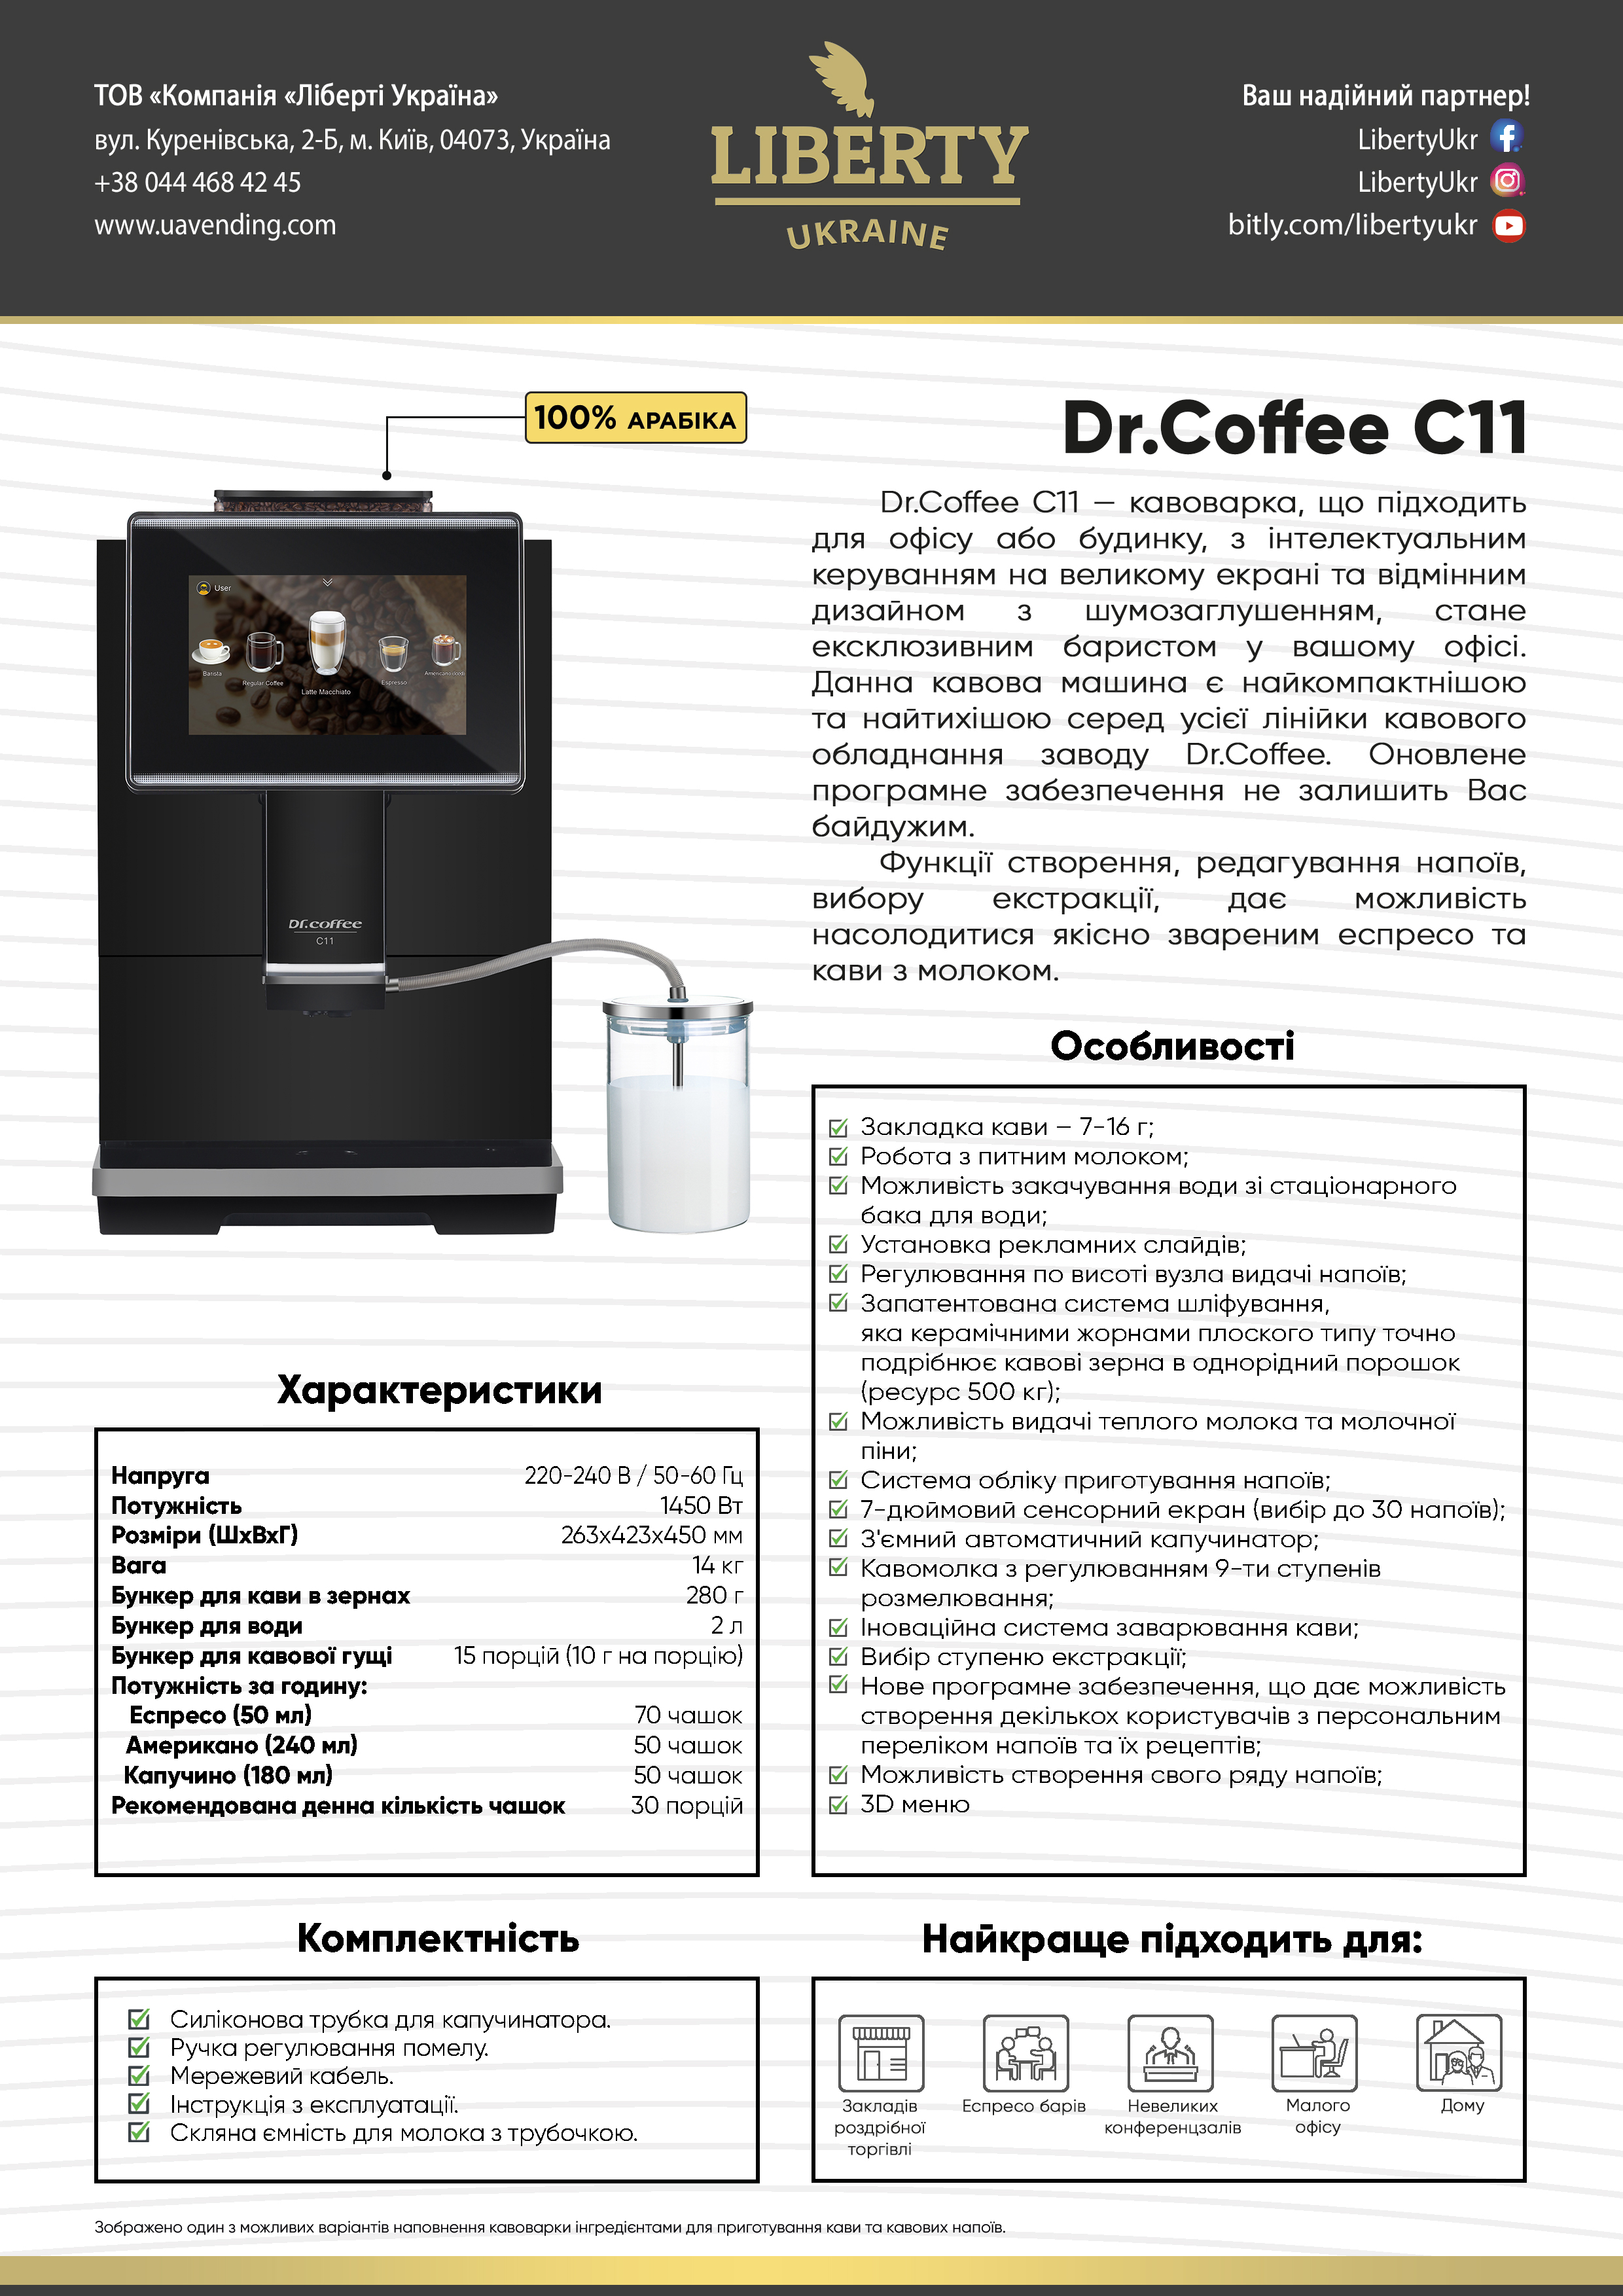 Dr. Café_C11